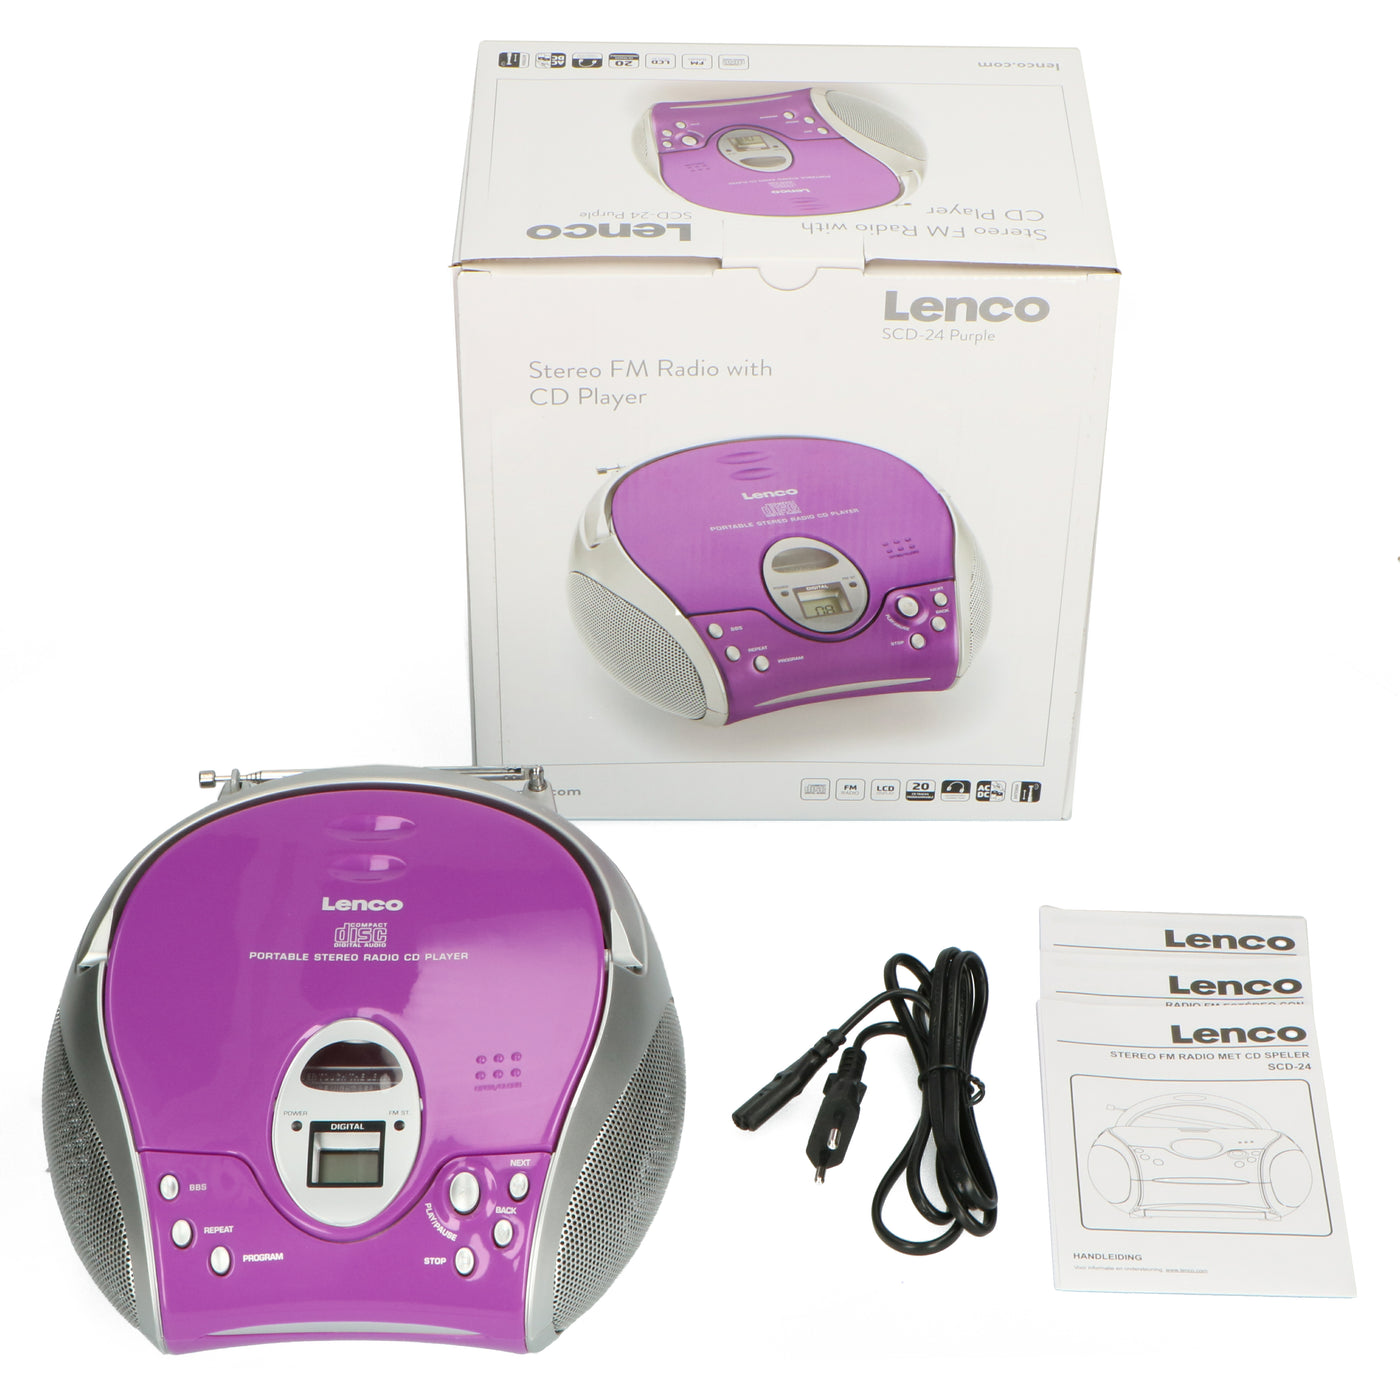 Lecteur laser CD portable - LENCO - SCD-24 - Violet - Radio FM - Batterie 6  x type C - Cdiscount TV Son Photo